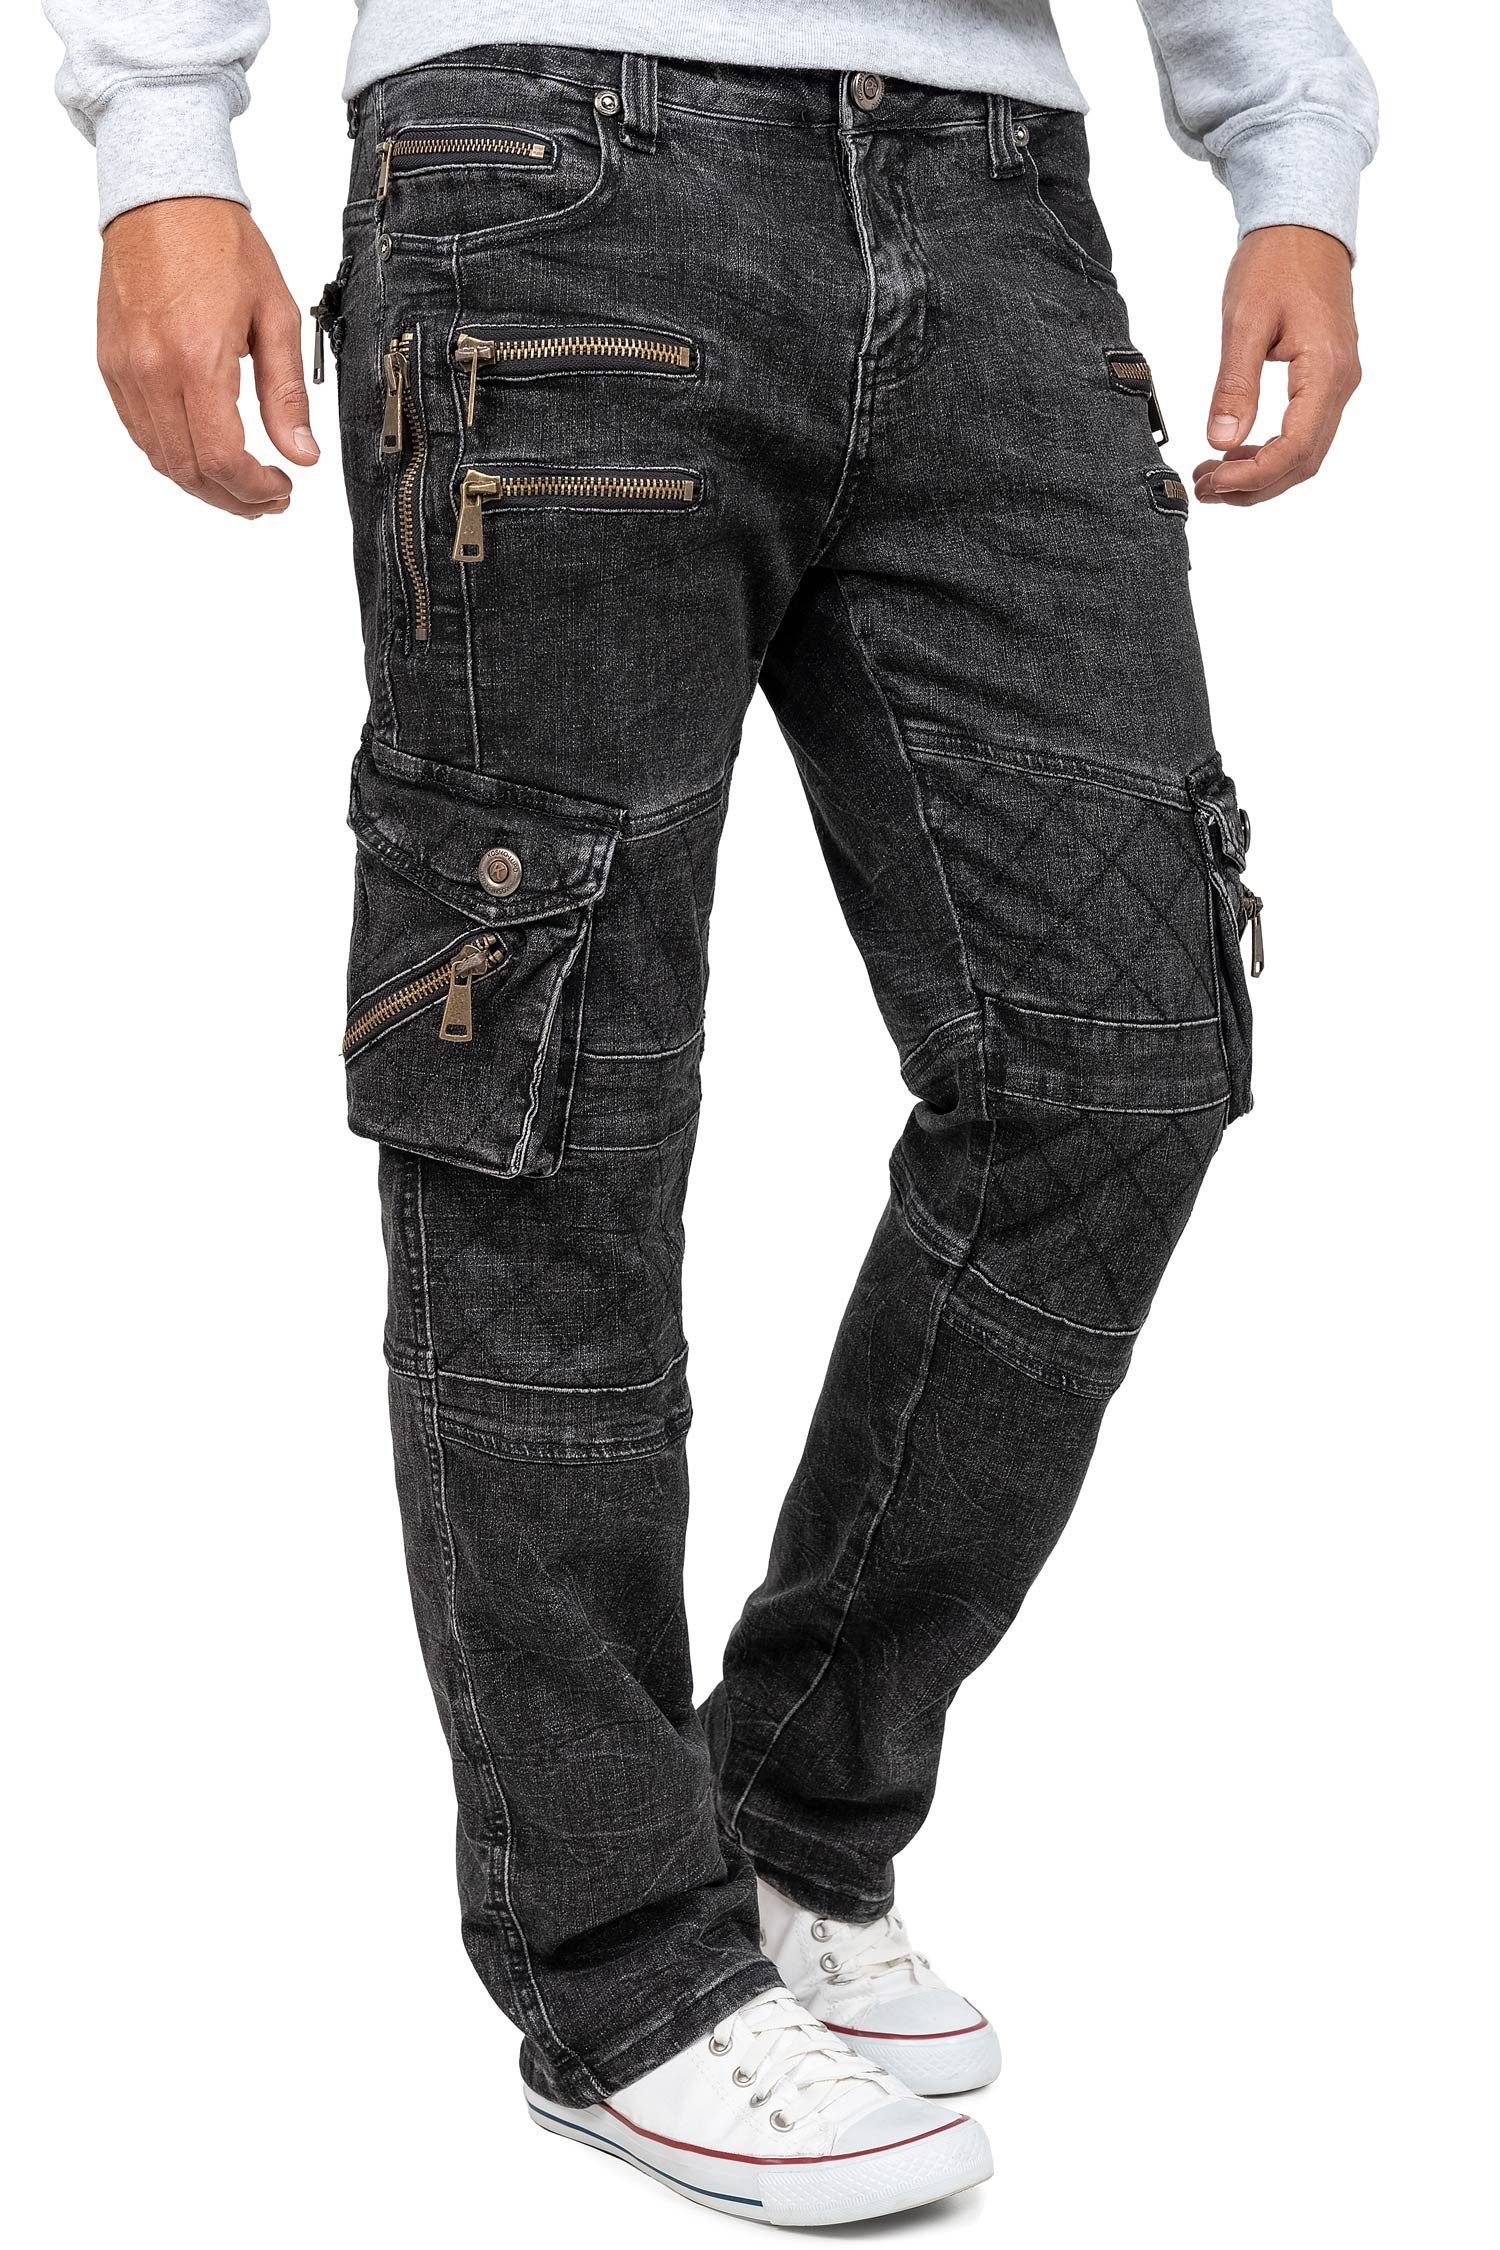 Nieten Auffällige BA-KM060 Verzierungen 5-Pocket-Jeans Kosmo Herren und schwarz Lupo Hose mit